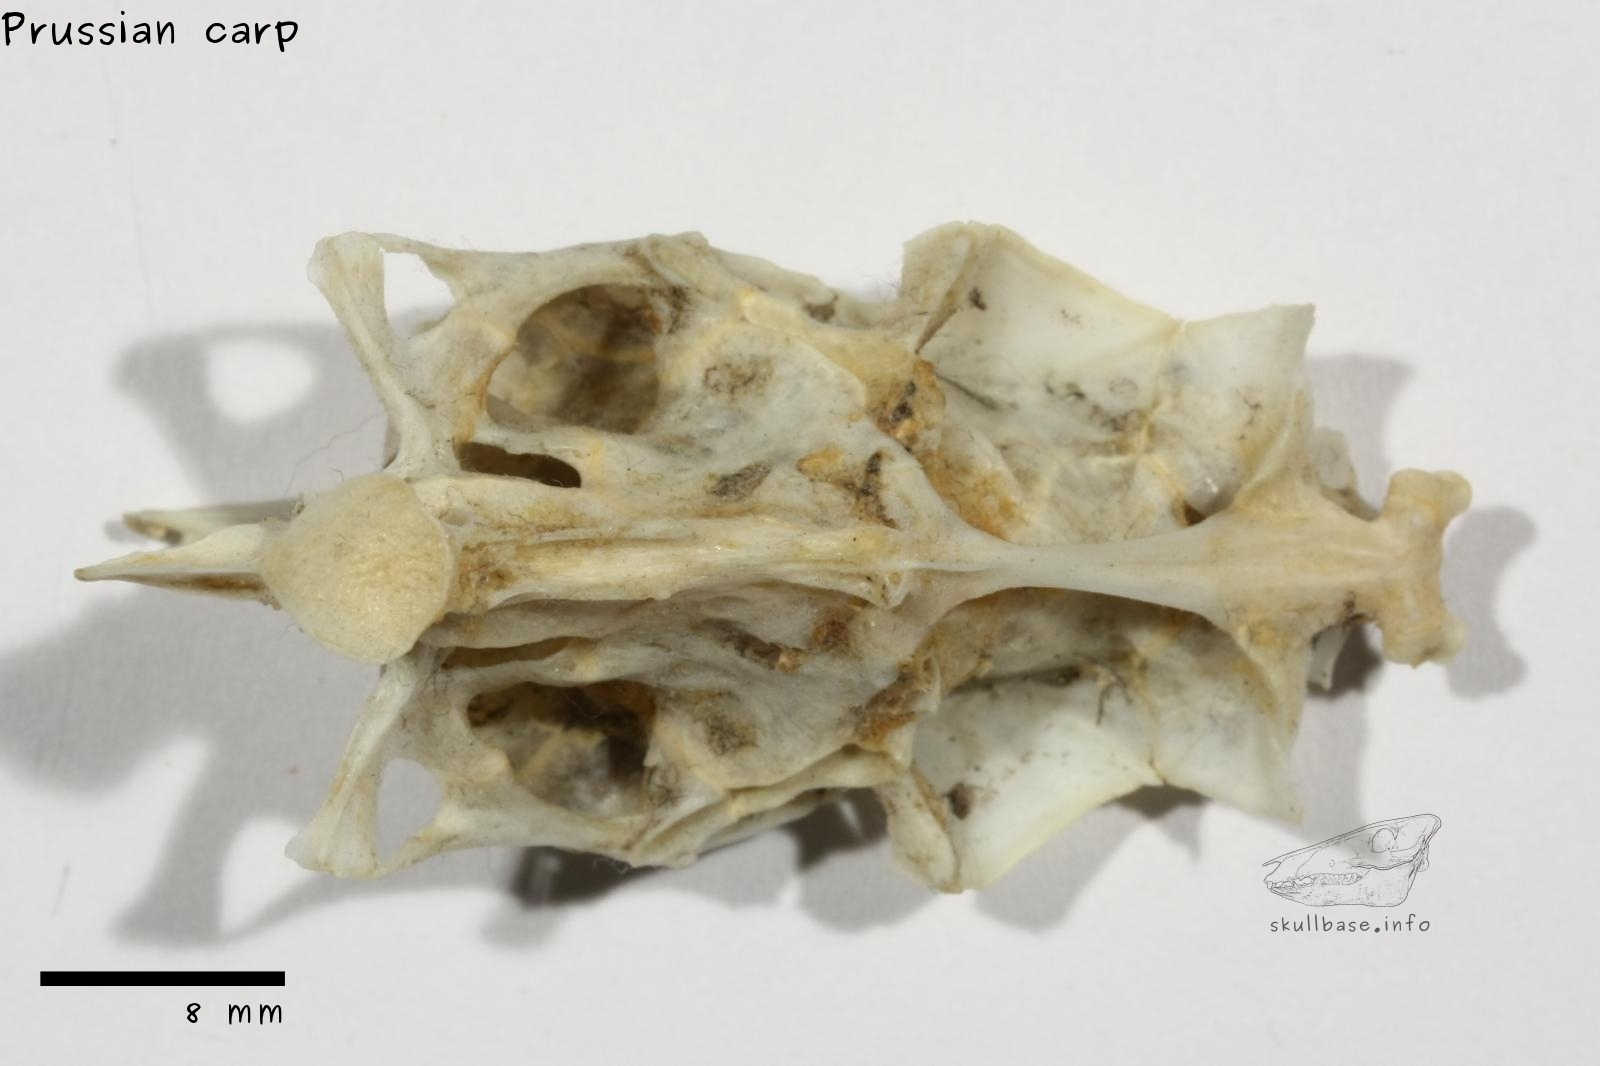 Prussian carp (Carassius gibelio) neurocranium ventral view